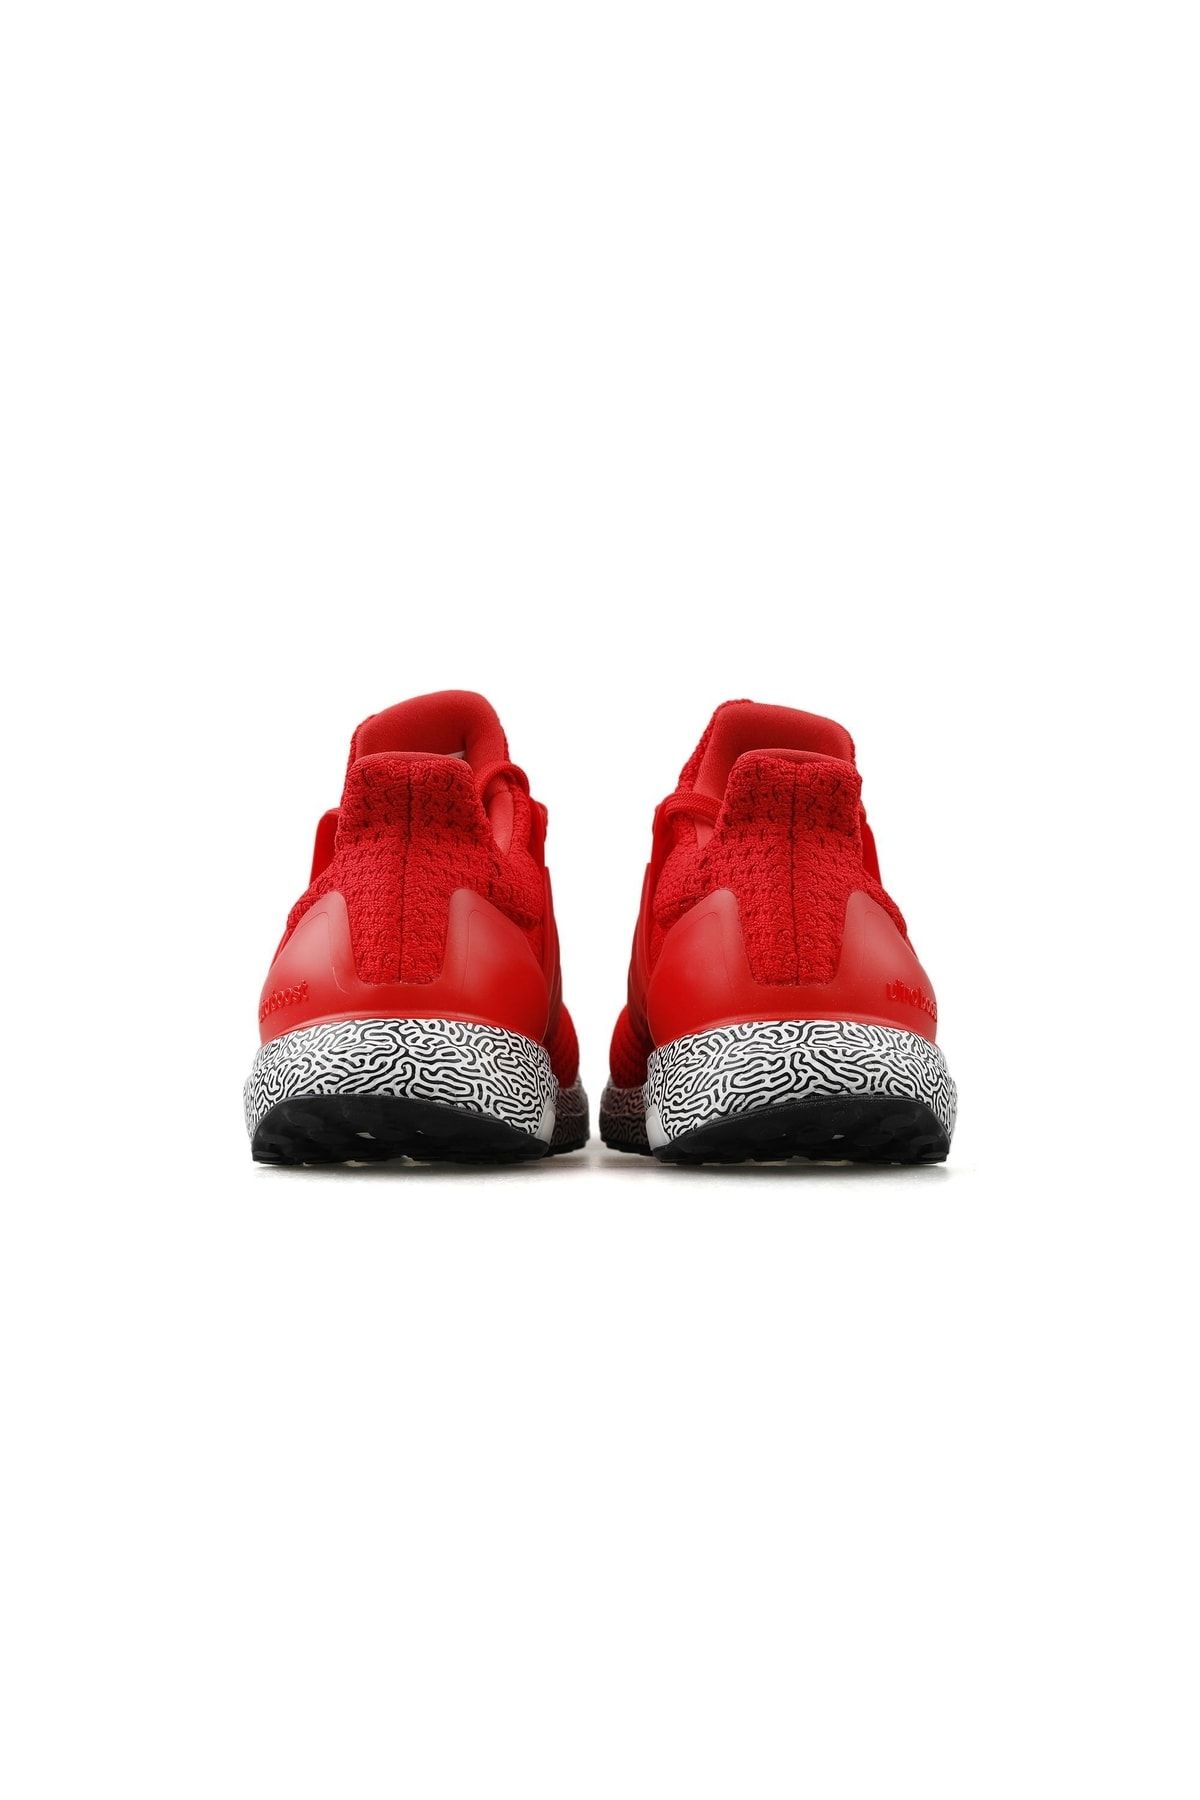 کفش کتانی دویدن مردانه مدل Ultraboost Dna آدیداس Adidas